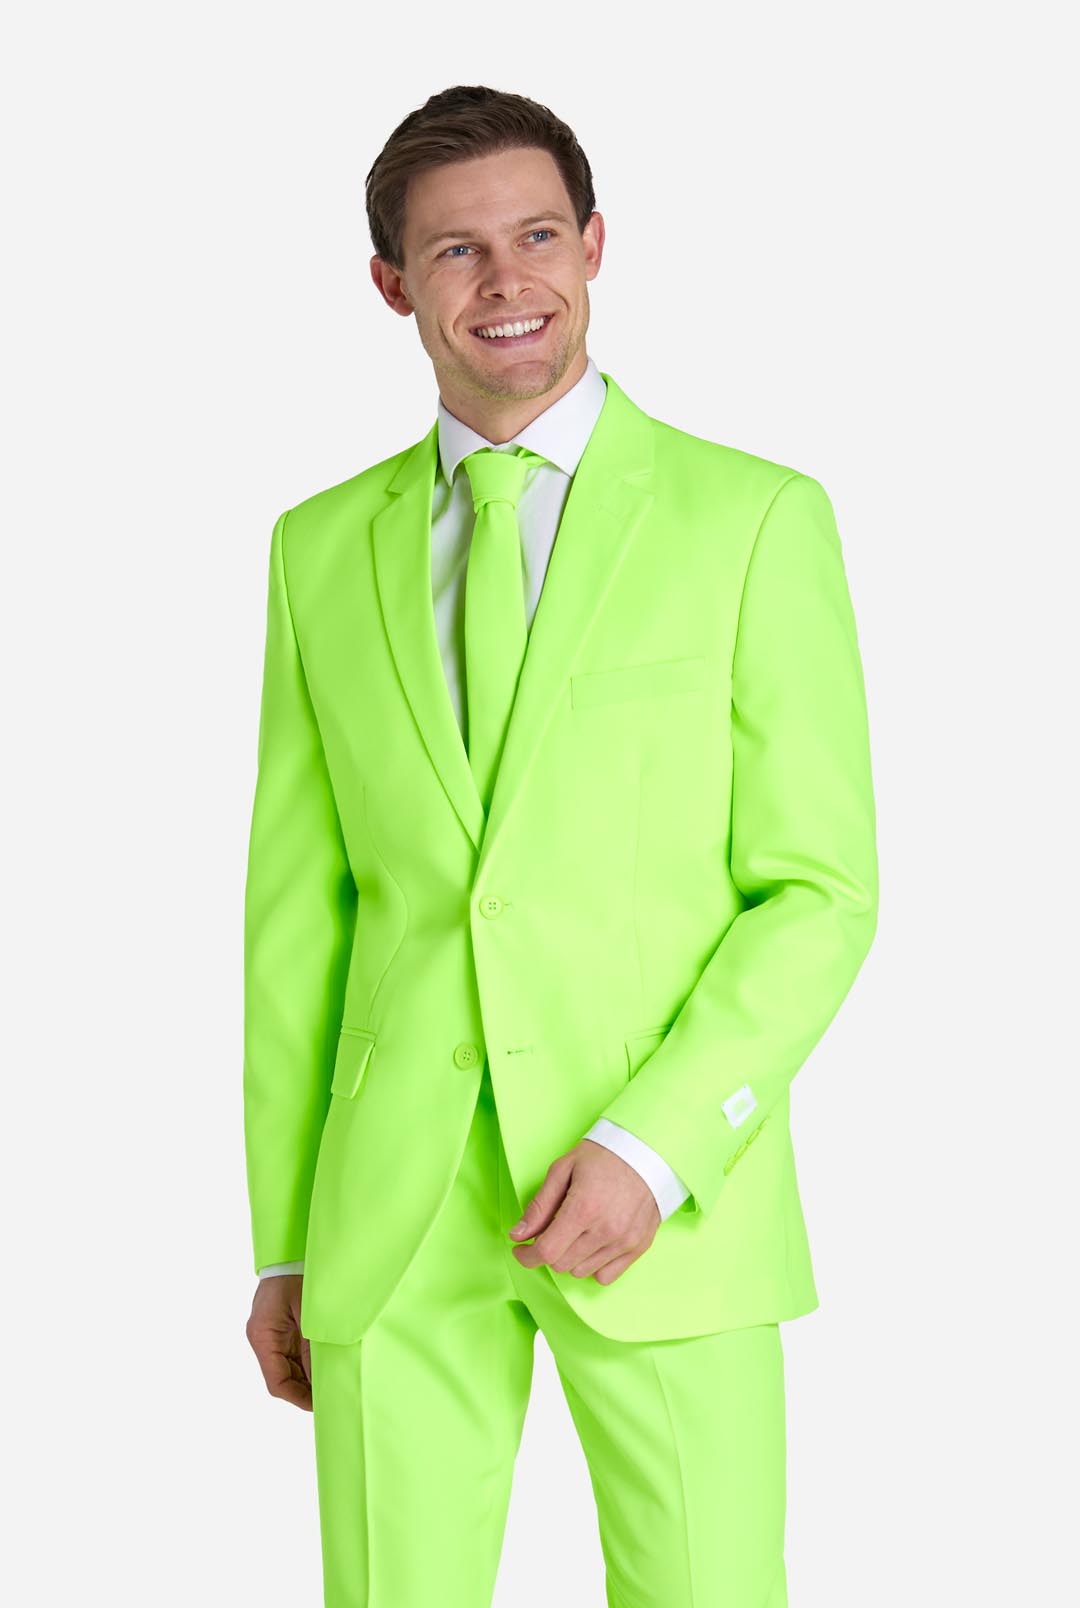 Men's Suits & Blazers for Sale - eBay | Green suit men, Wool suit men, Slim  fit suits